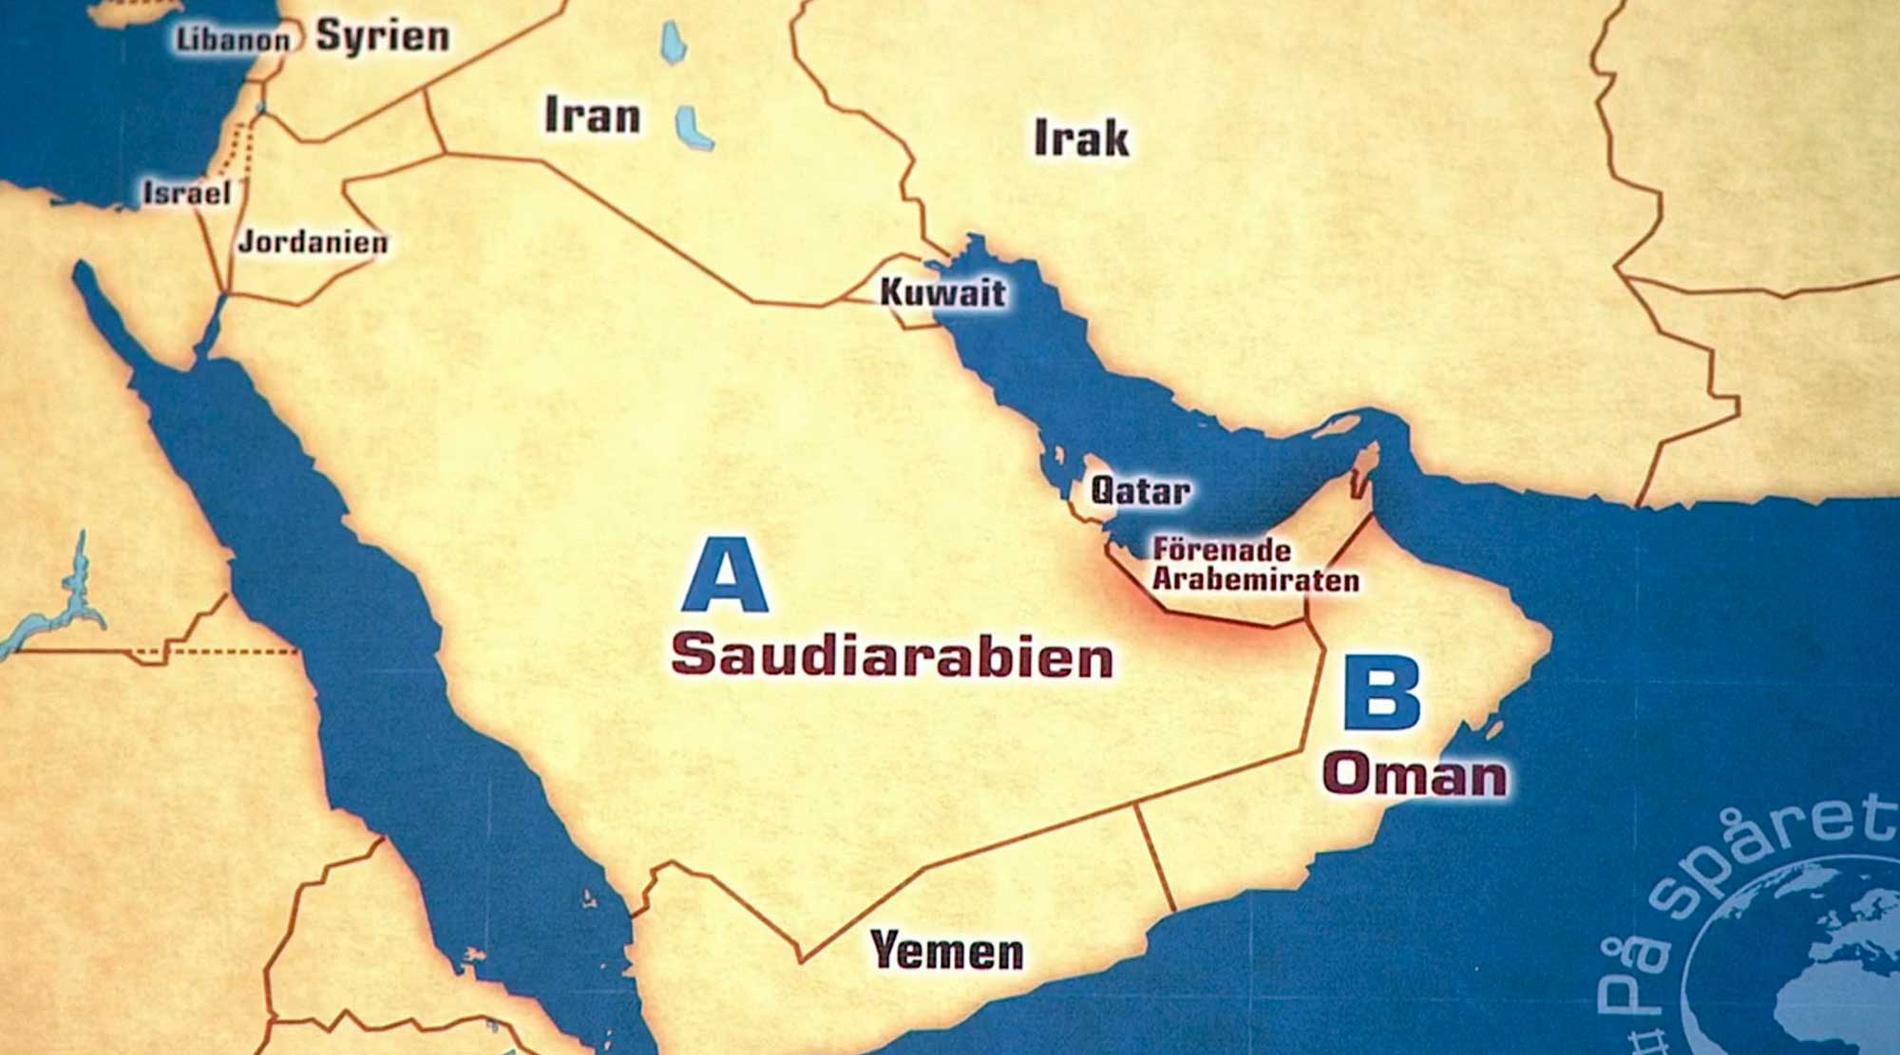 På kartan som visades i ”På spåret” hade placeringen av Irak och Iran kastats om.